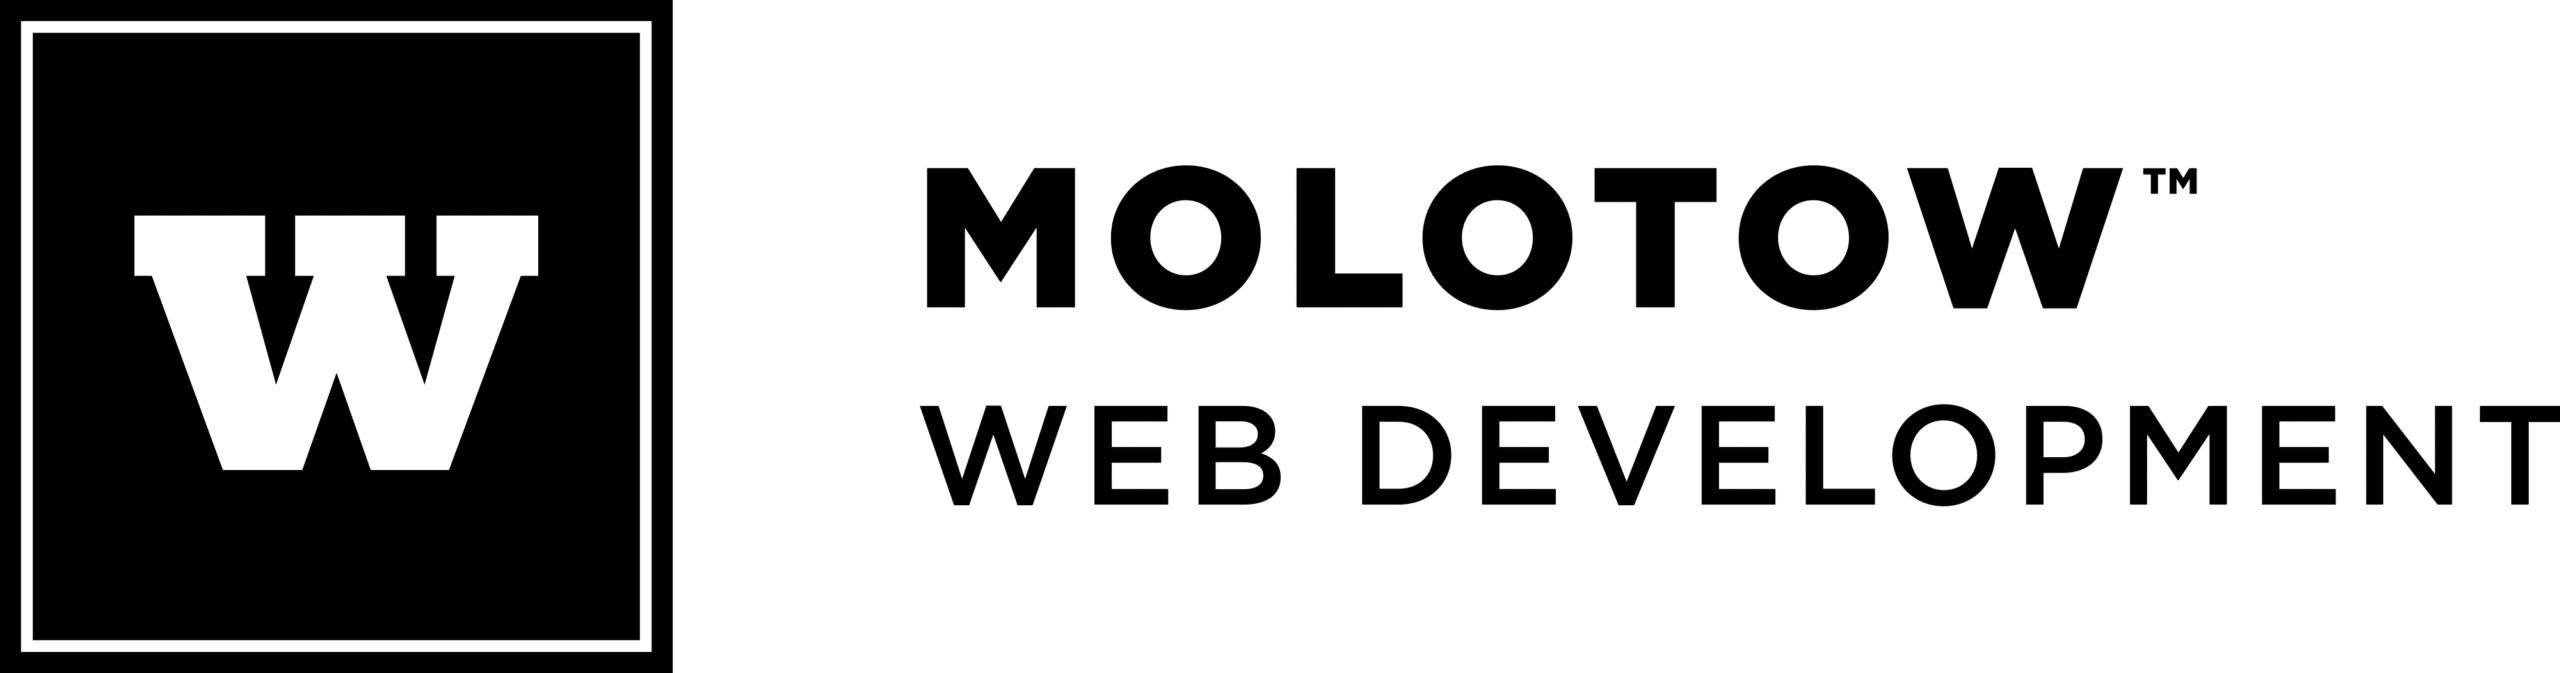 Logo MOLOTOW Web Development schwarz